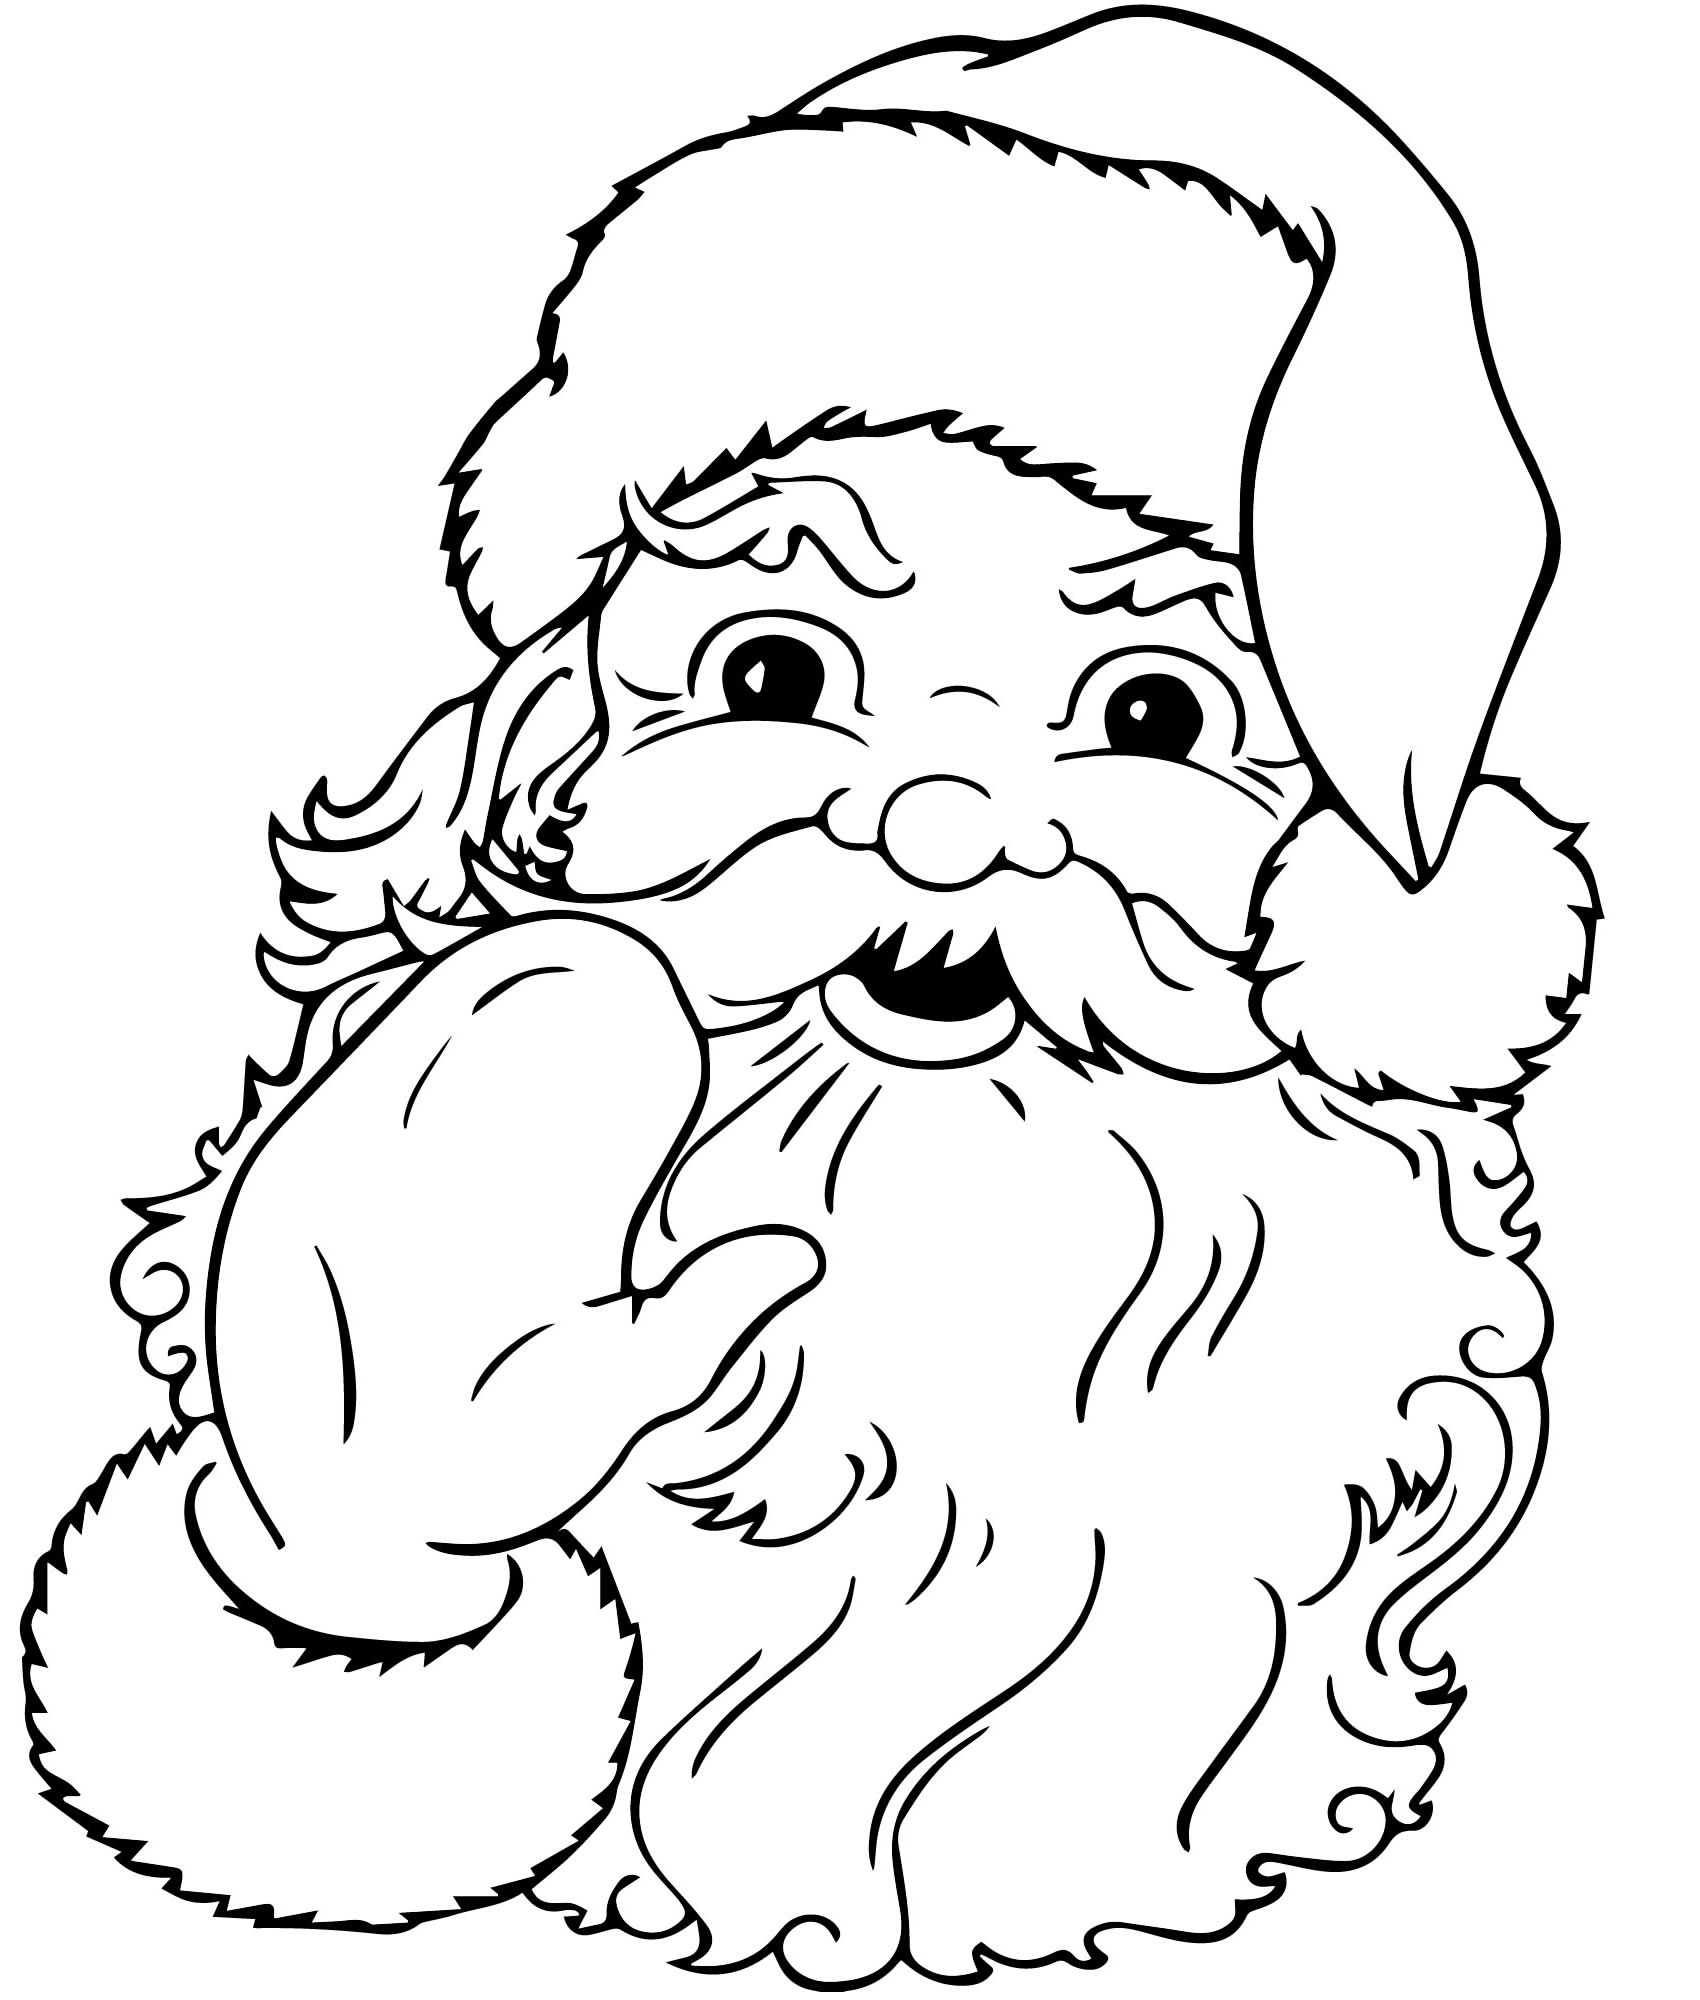 Санта-Клаус машет рукой раскраска для детей